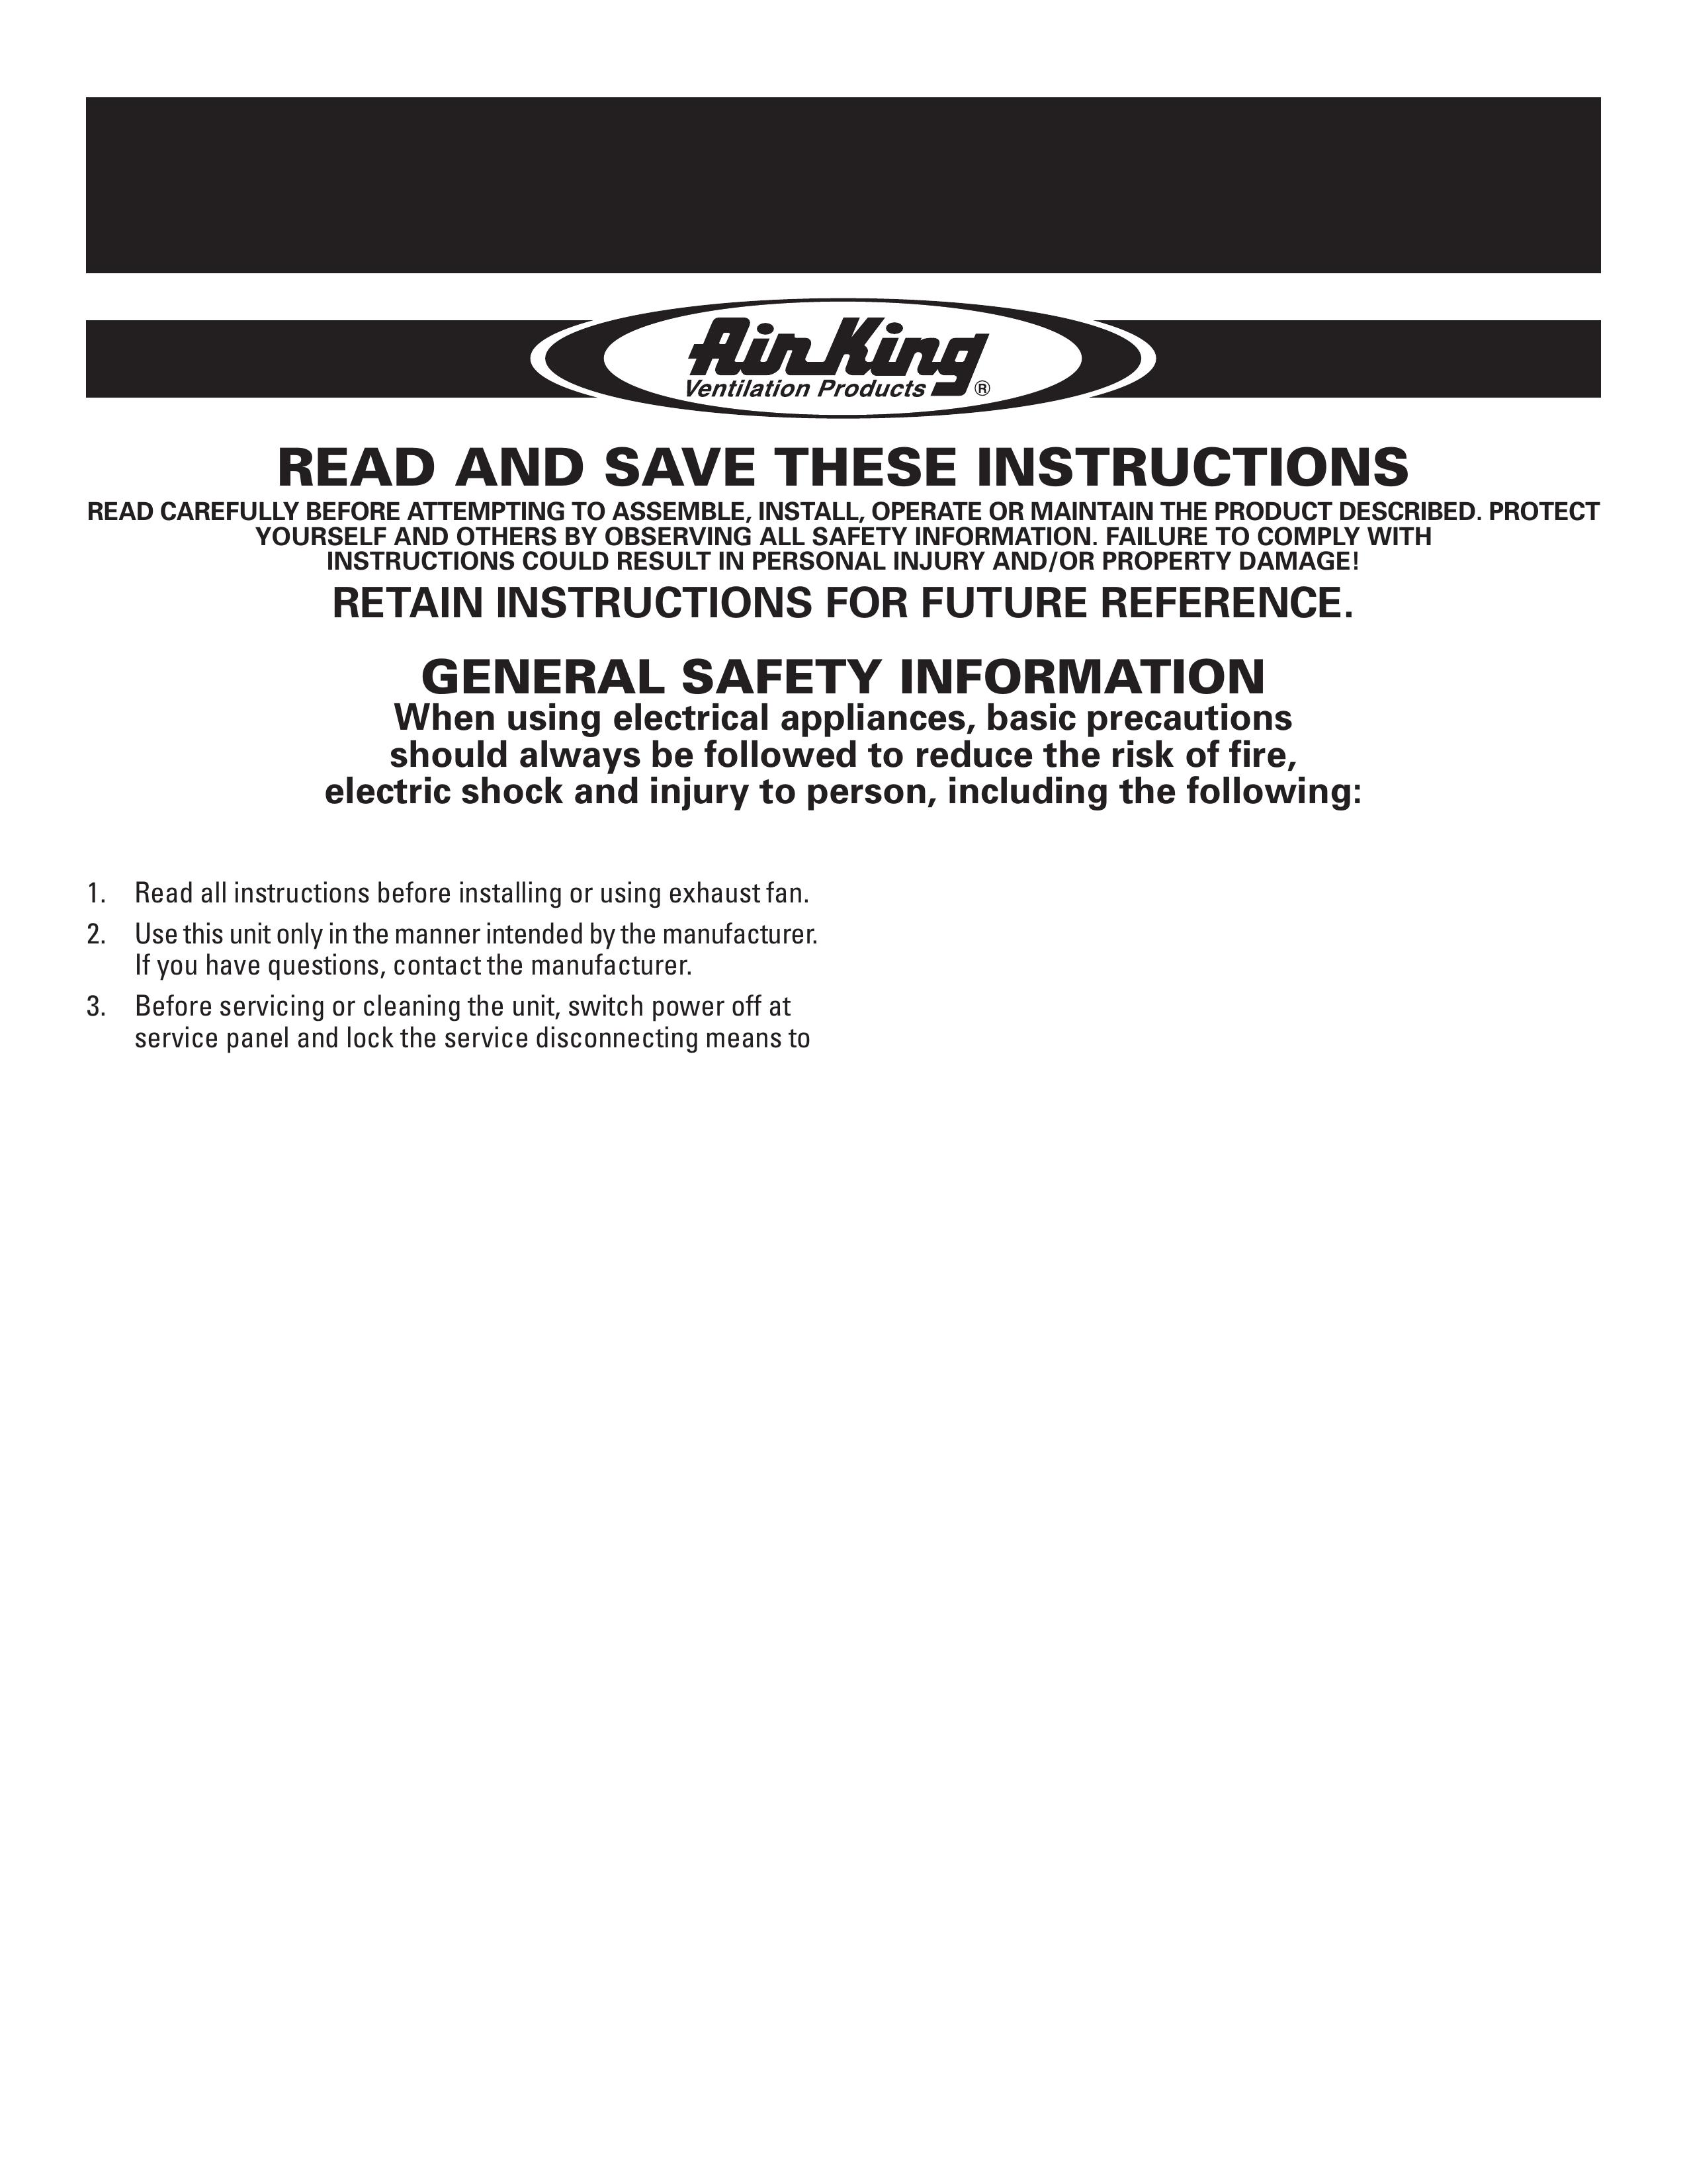 Air King AK80 Blower User Manual (Page 1)